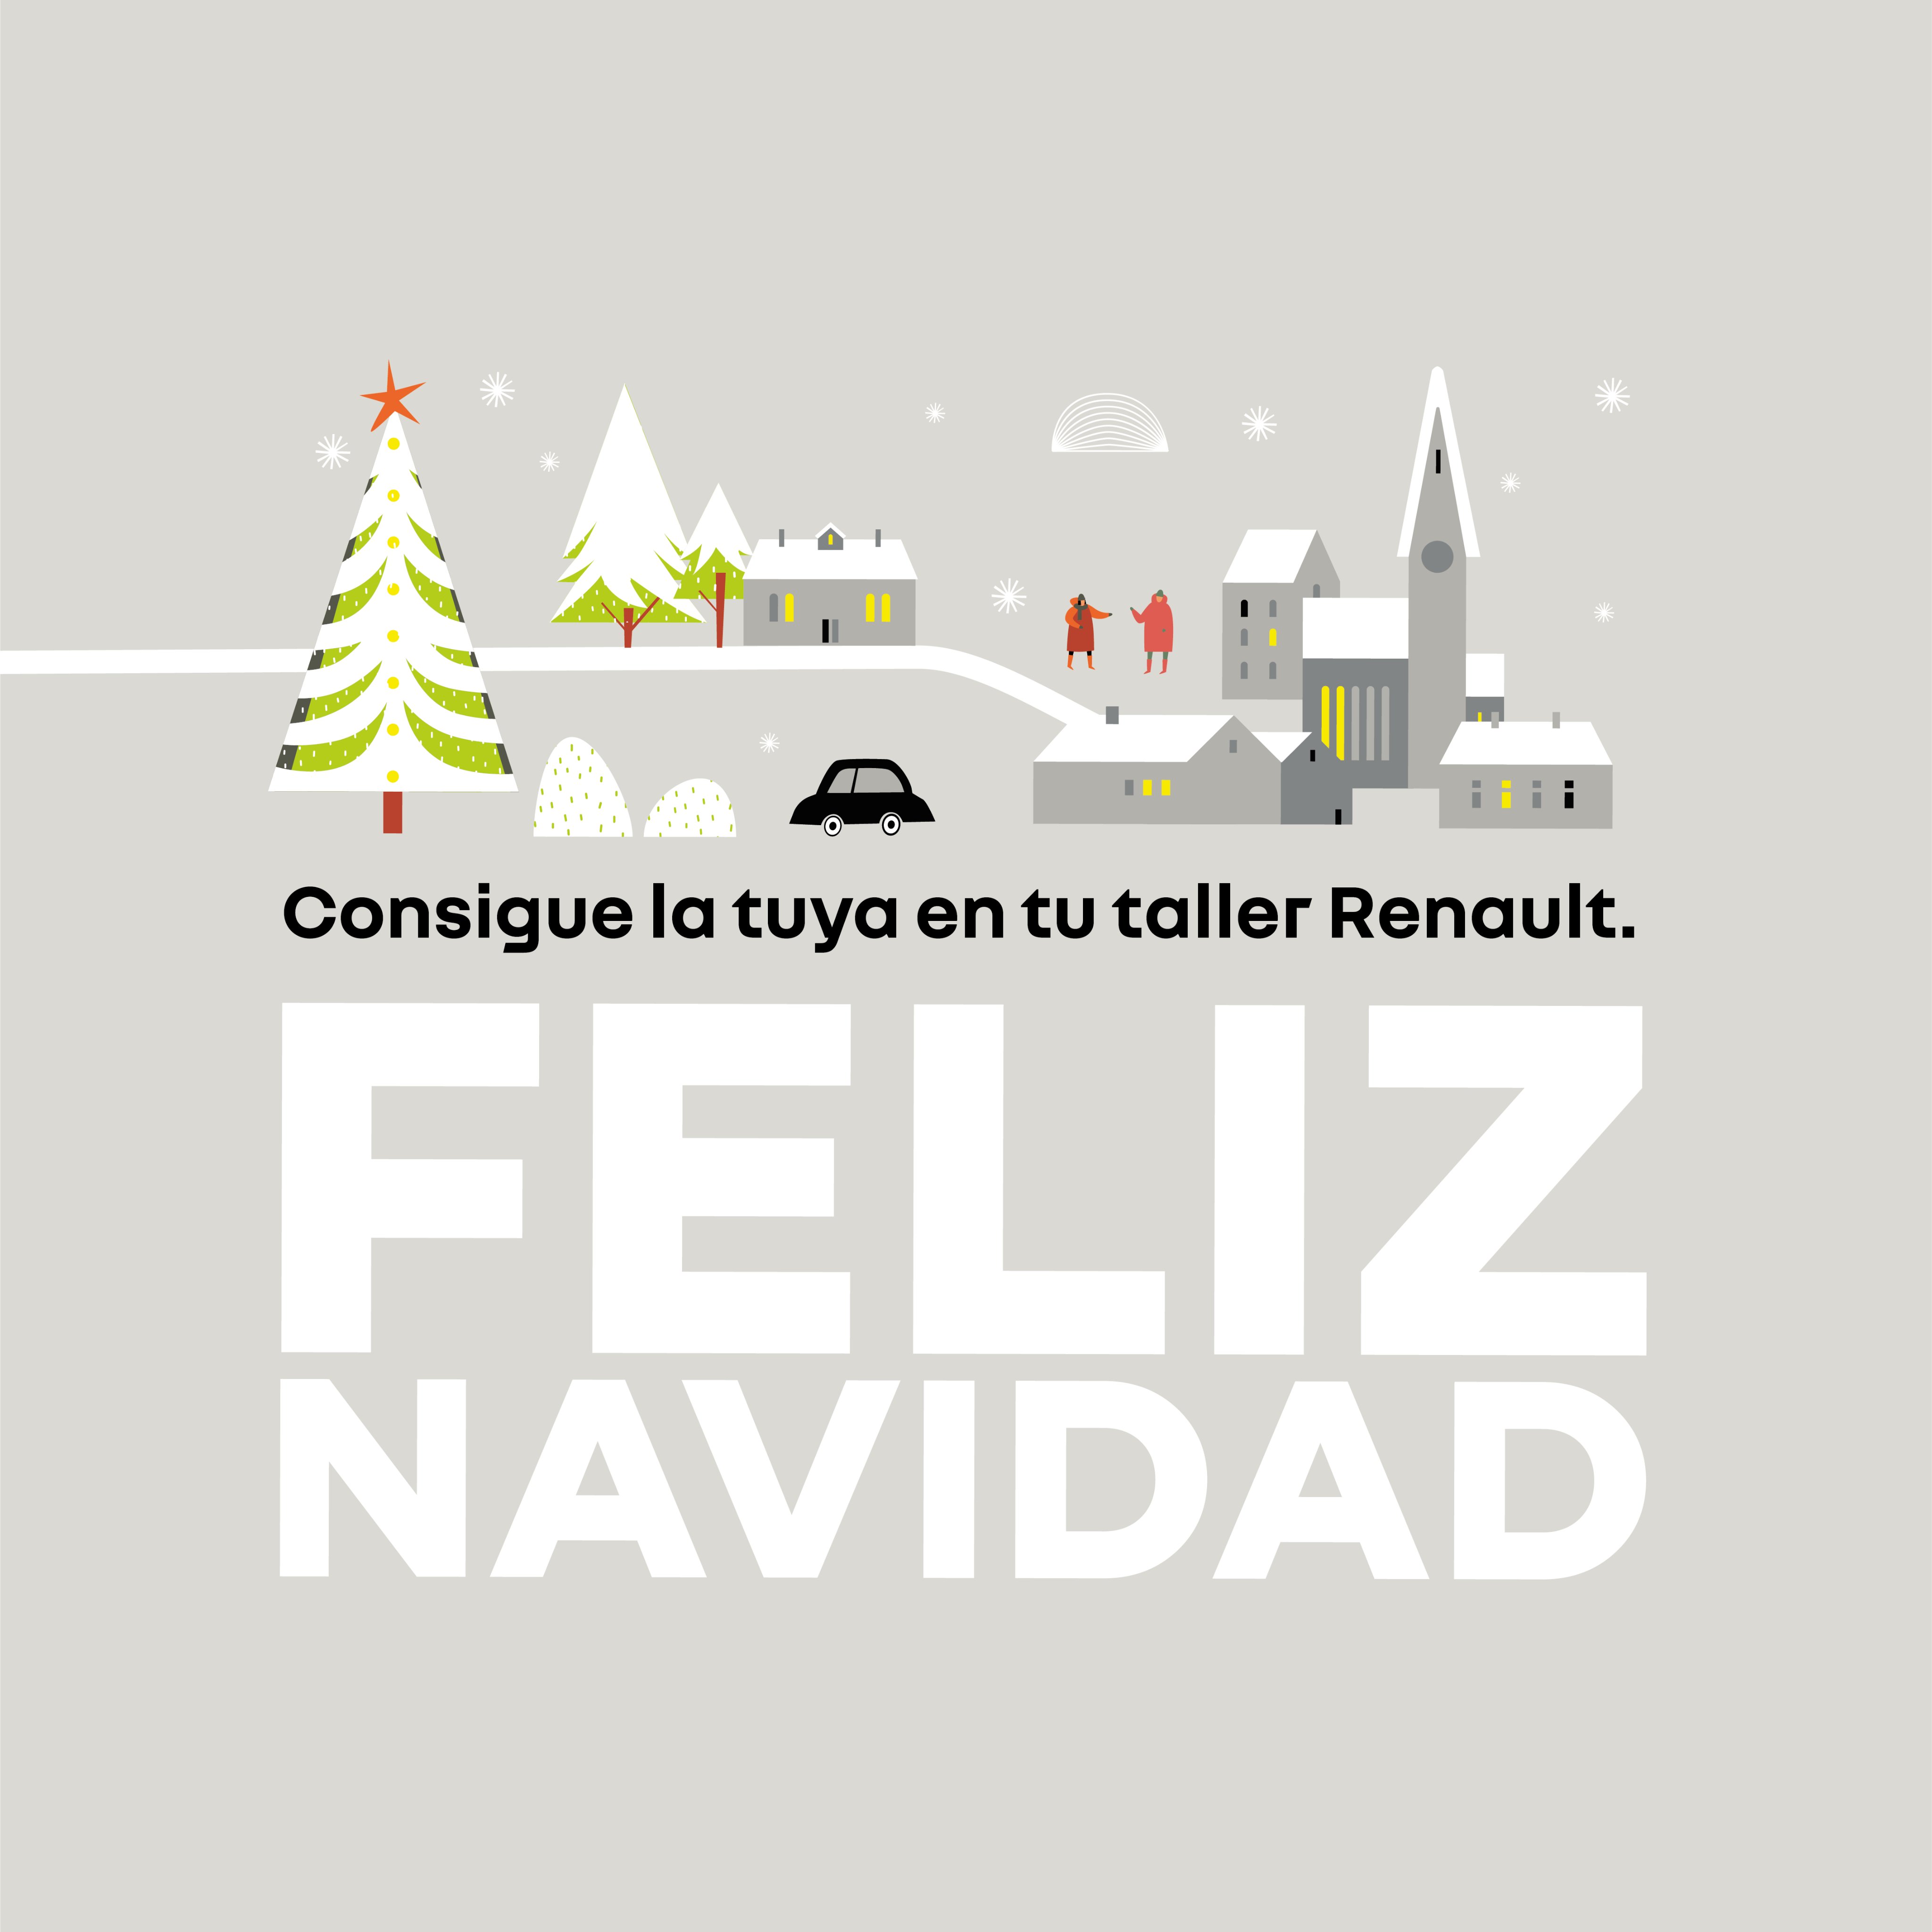 renault_autocarpe on Twitter: "En Renault sabemos cuidar bien de los  nuestros, por eso queremos agradecer tu confianza regalándote esta cesta de  Navidad con cualquier operación de taller. ¡Consigue la tuya! ☎️ 91